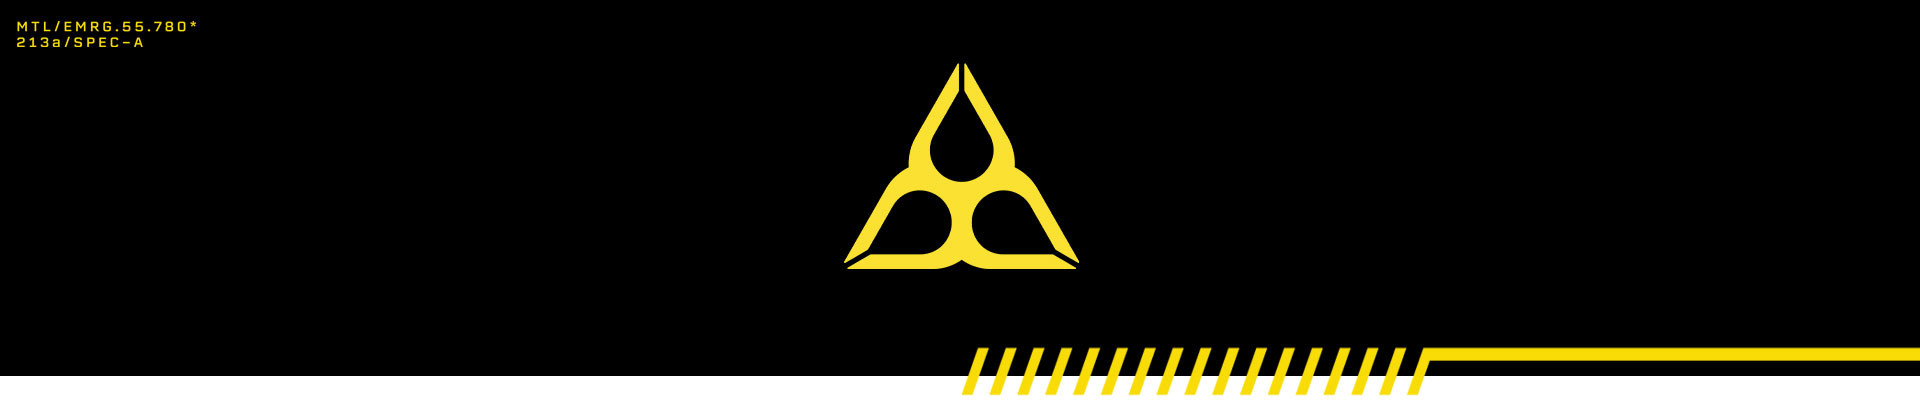 Turuncu bilgisayarda bir tehlike sembolü şeklinde düzenlenmiş üç gözyaşı damlası ile gösterilen okuma bilgisi.